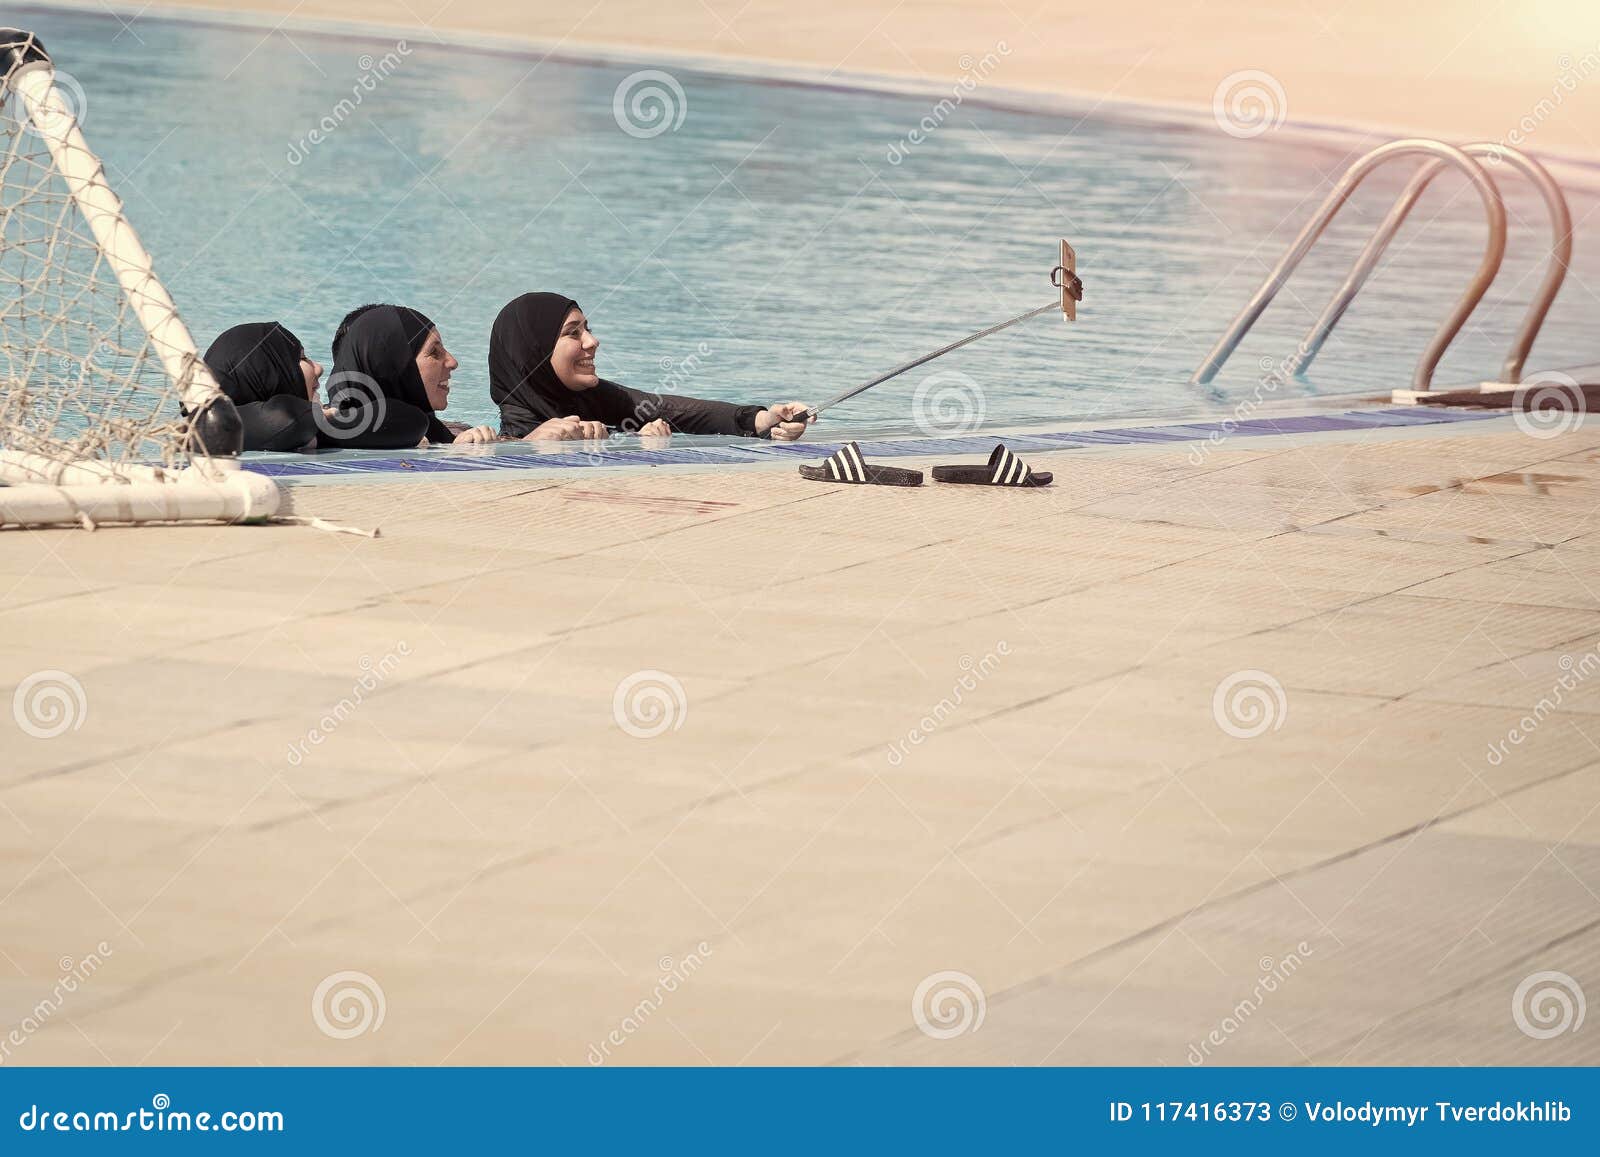 desi muslim girl bathing selfie